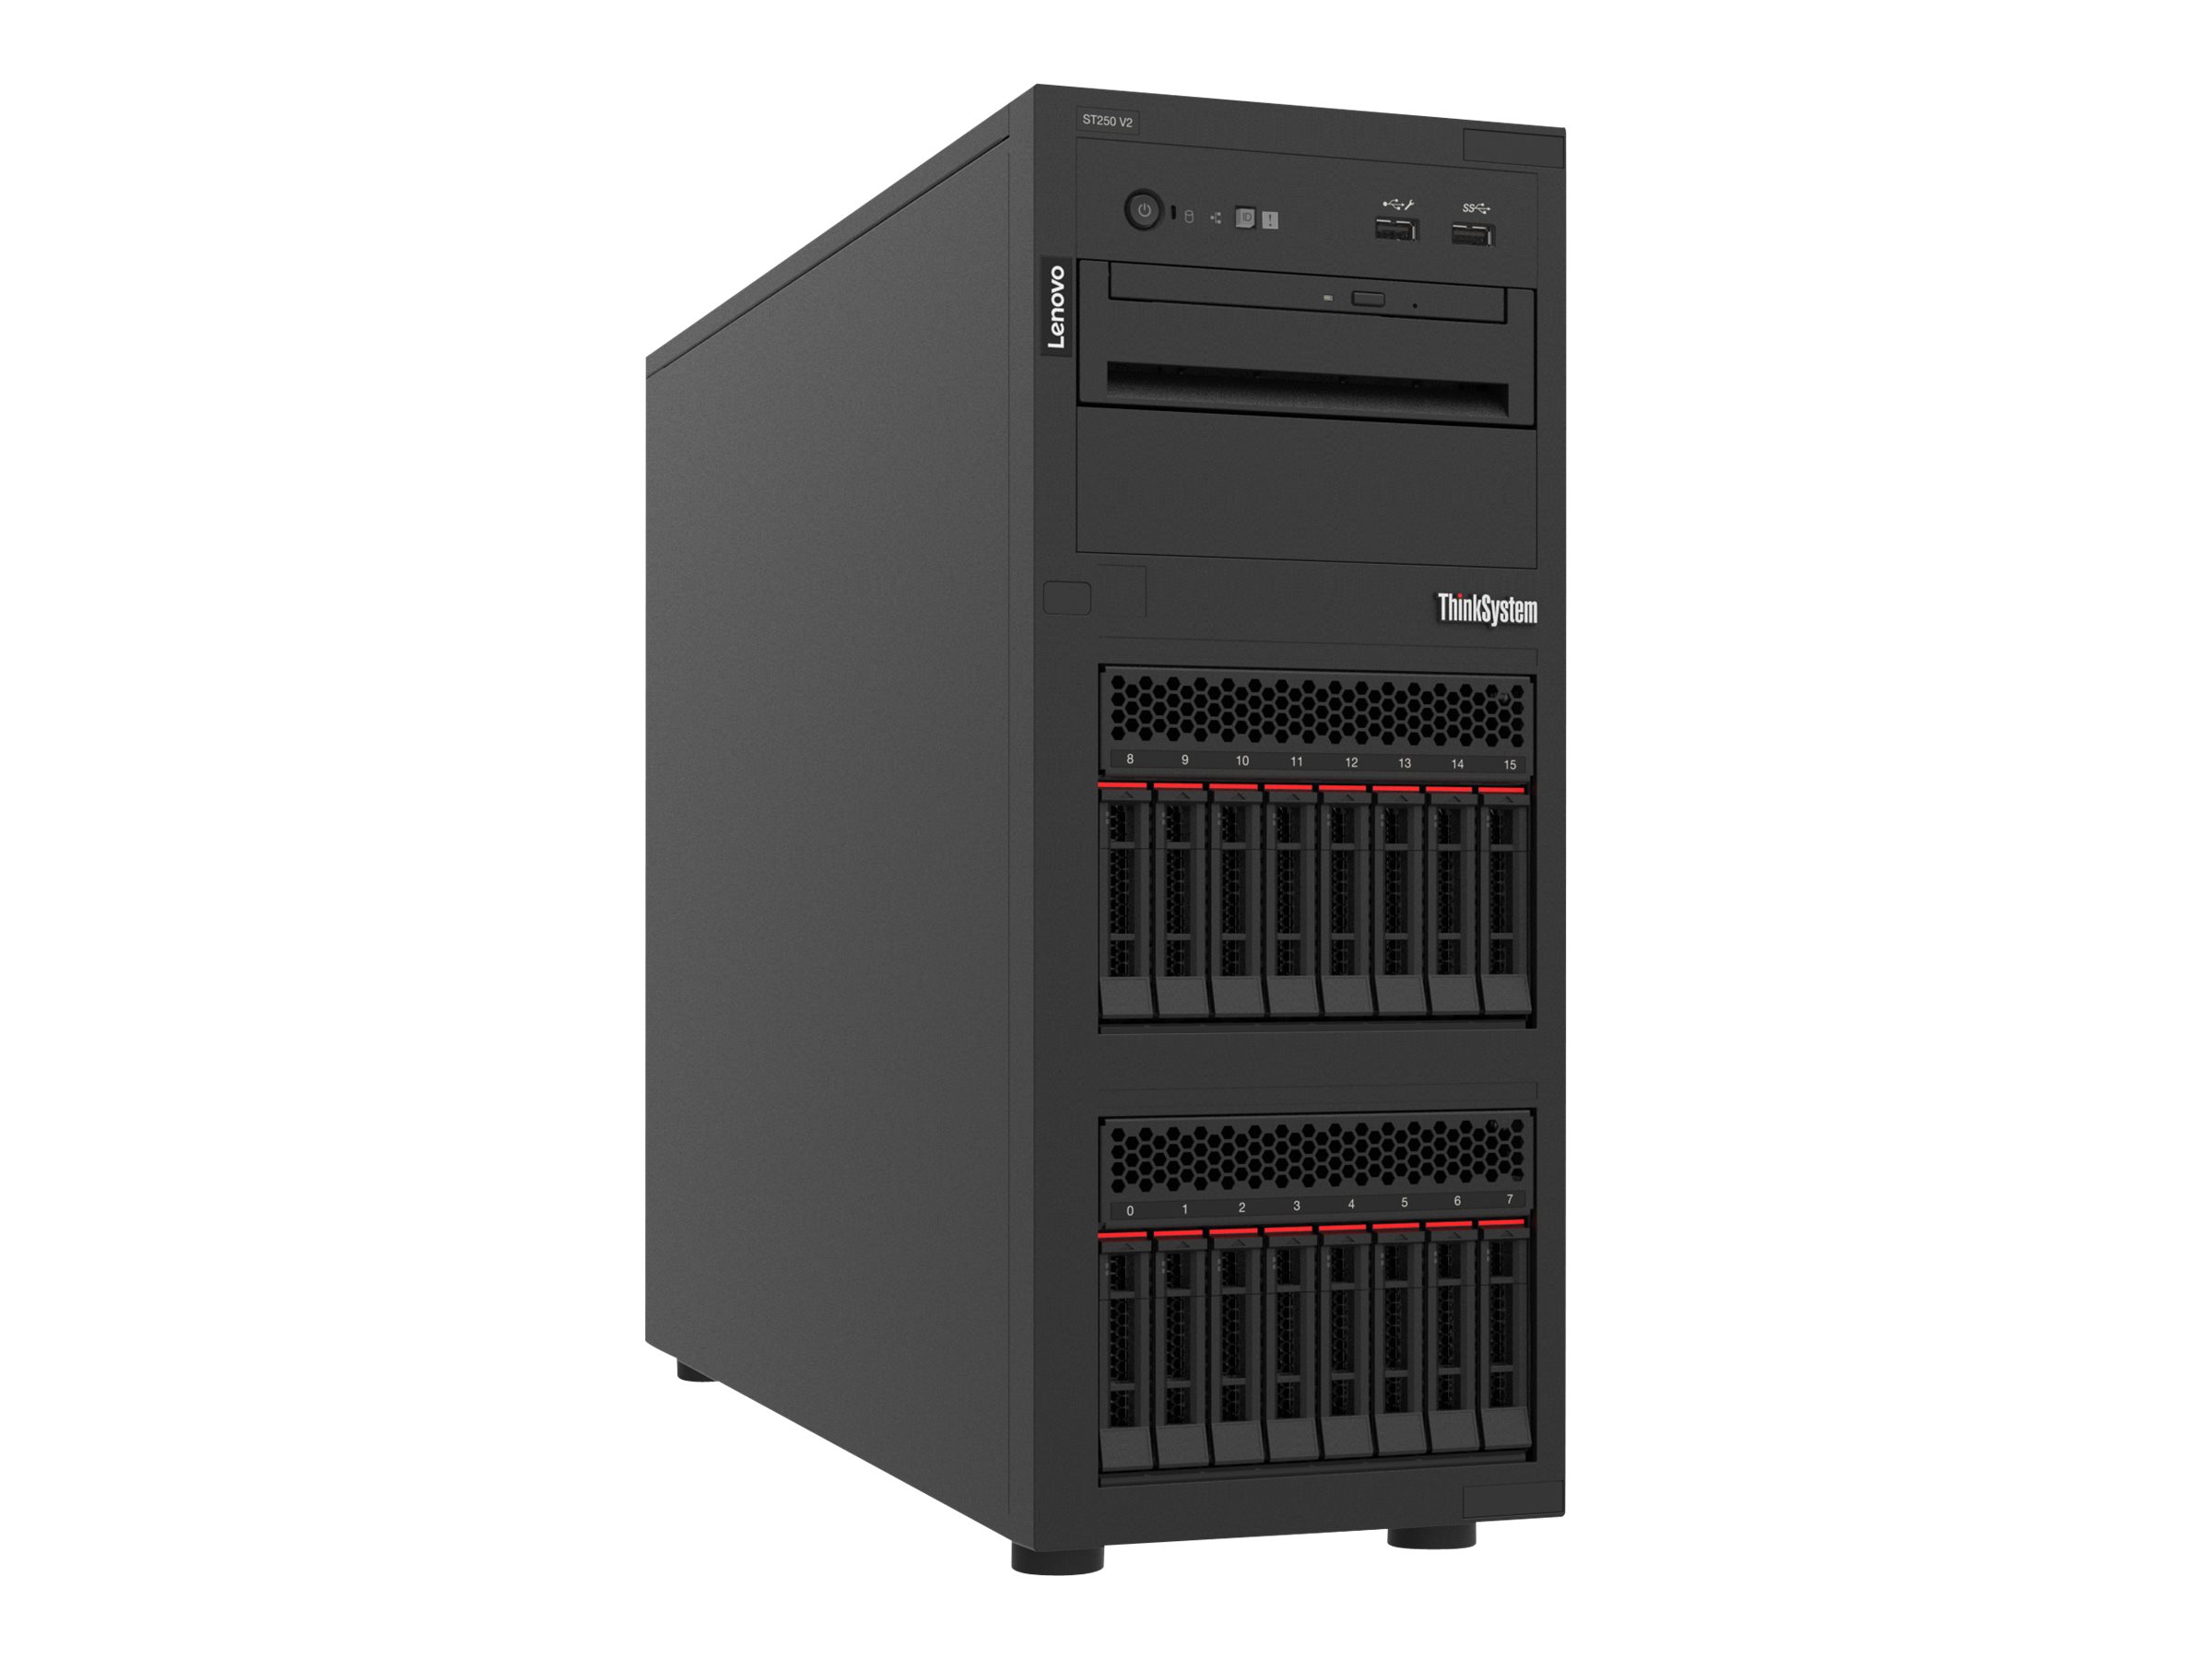 Lenovo ThinkSystem ST250 V2 7D8F - Server - Tower - 4U - 1-Weg - 1 x Xeon E-2356G / 3.2 GHz - RAM 32 GB - Hot-Swap 6.4 cm (2.5") Schacht/Schächte - keine HDD - Matrox G200 - GigE - kein Betriebssystem - Monitor: keiner